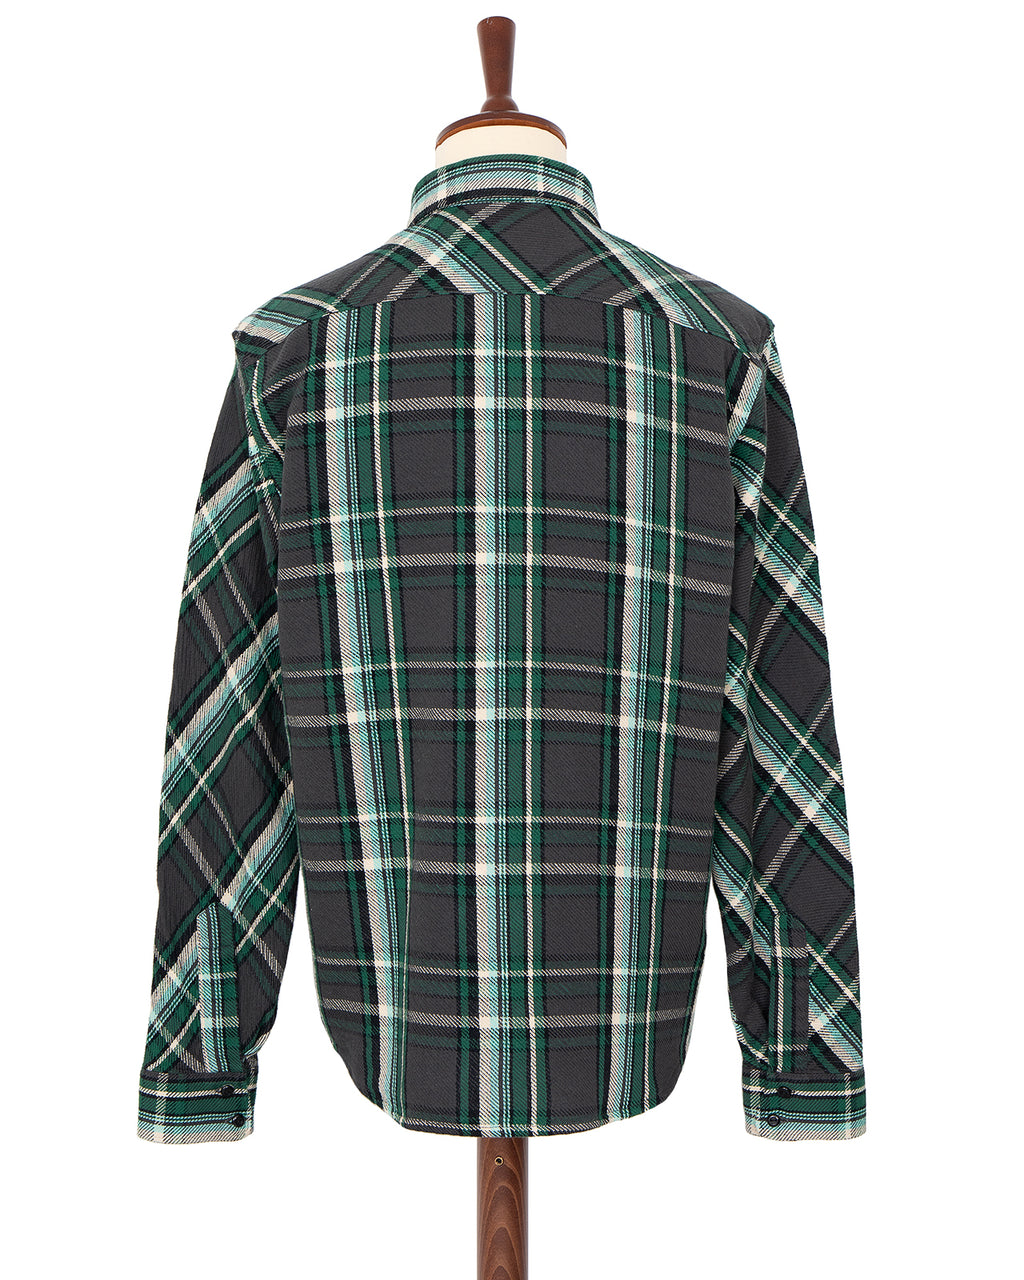 Indigofera Bryson Shirt, Unbrushed Check, Black / Green / White / Turquoise